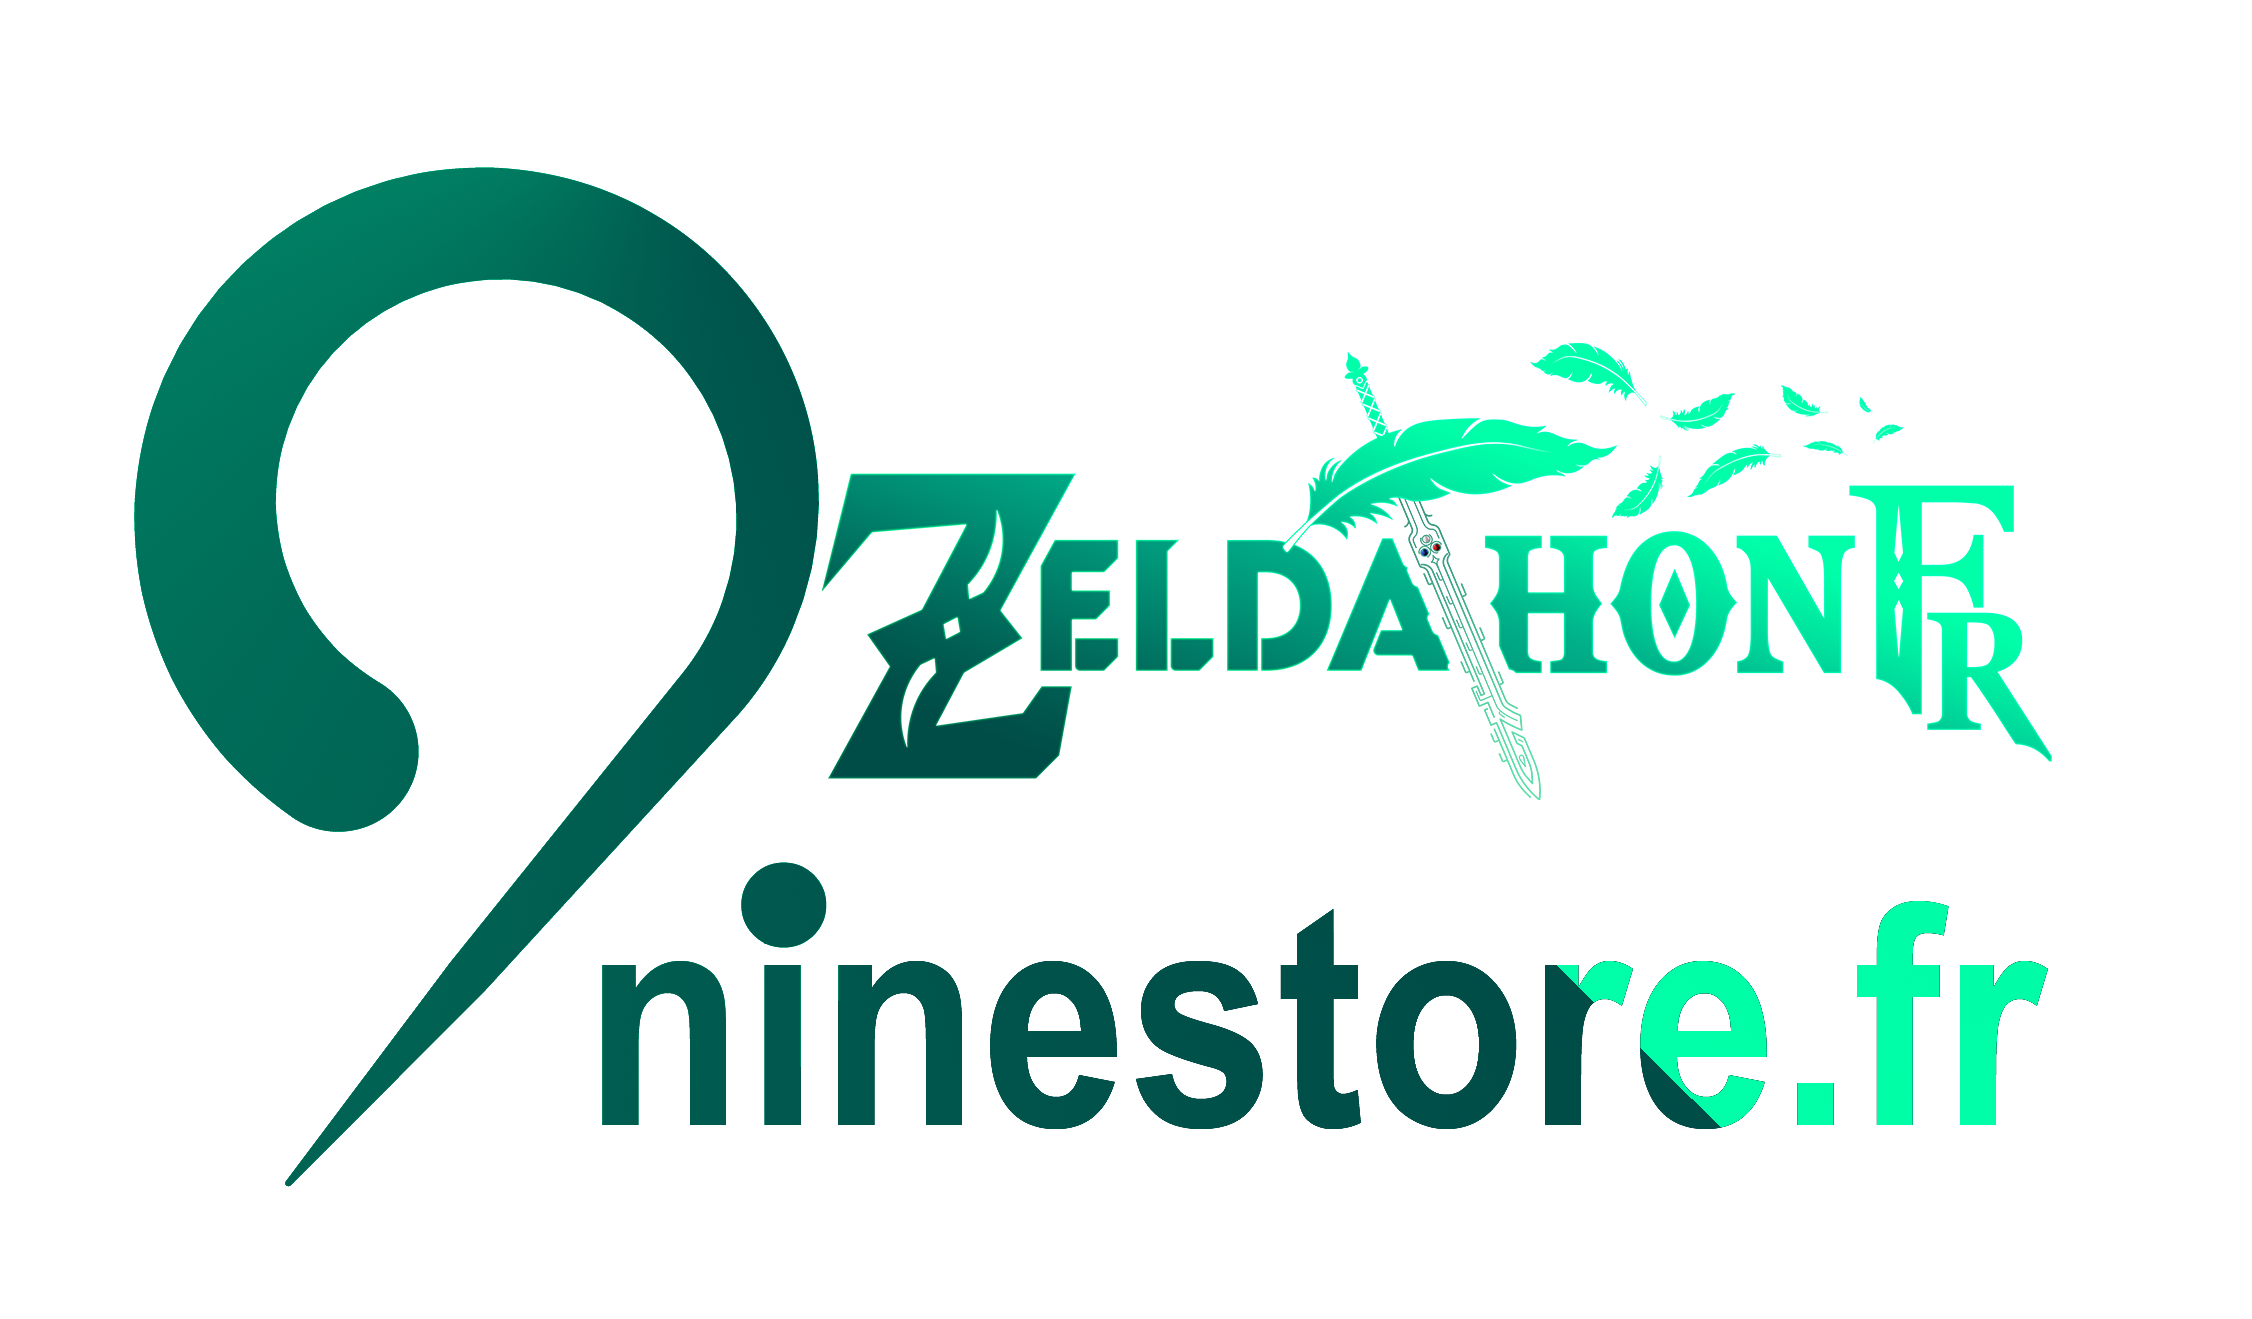 Zeldathon x NineStore